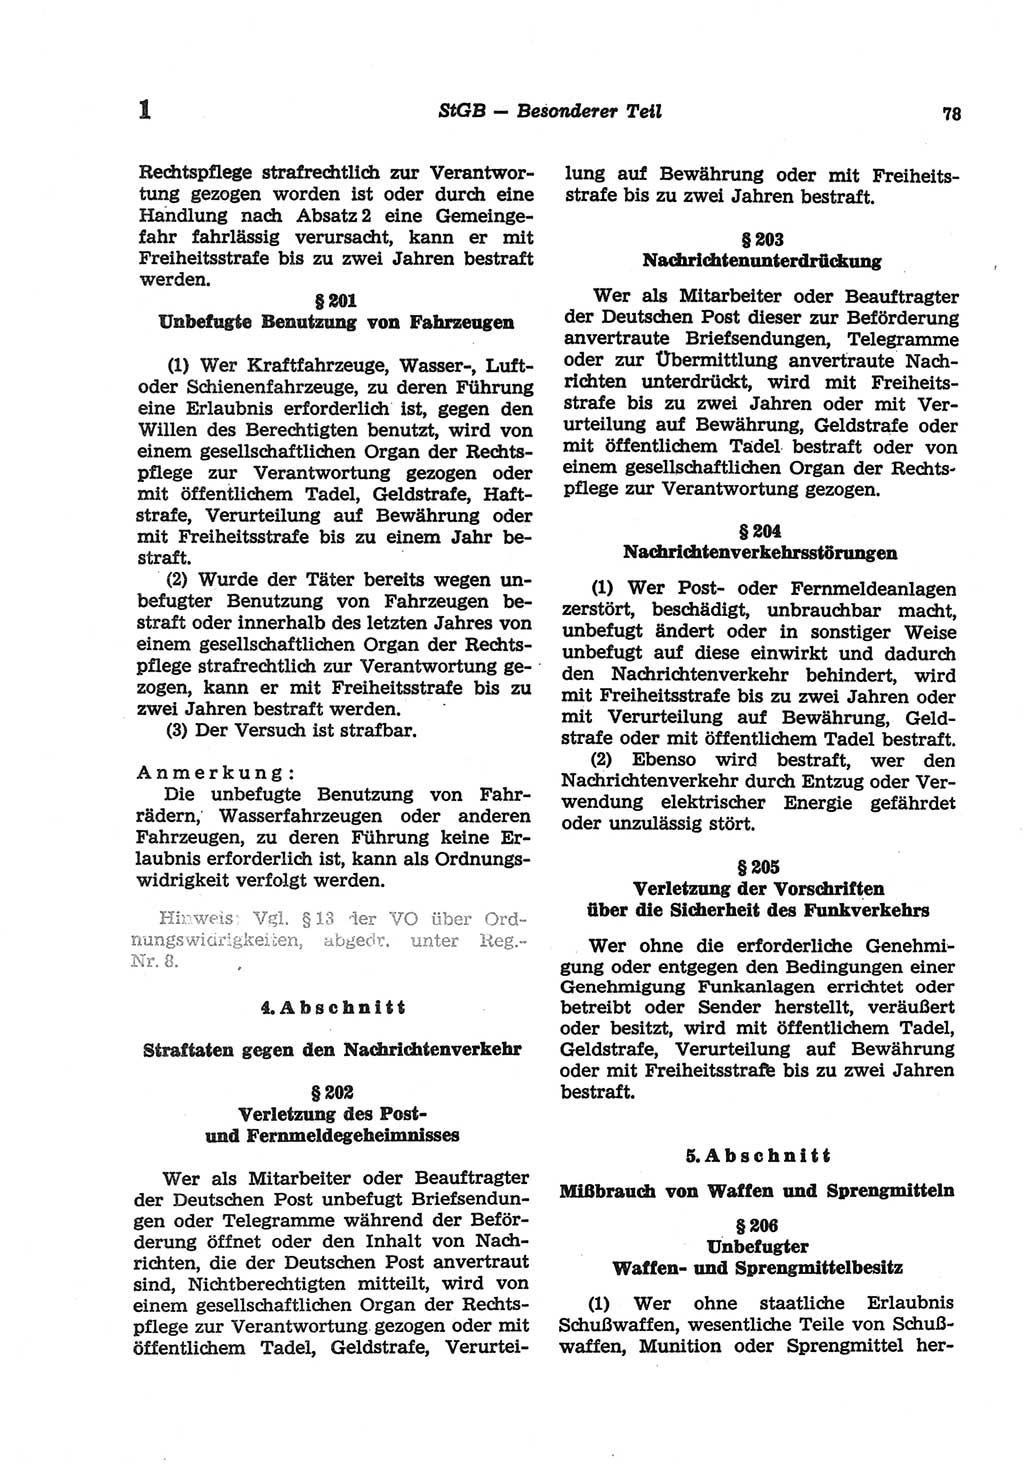 Strafgesetzbuch (StGB) der Deutschen Demokratischen Republik (DDR) und angrenzende Gesetze und Bestimmungen 1977, Seite 78 (StGB DDR Ges. Best. 1977, S. 78)